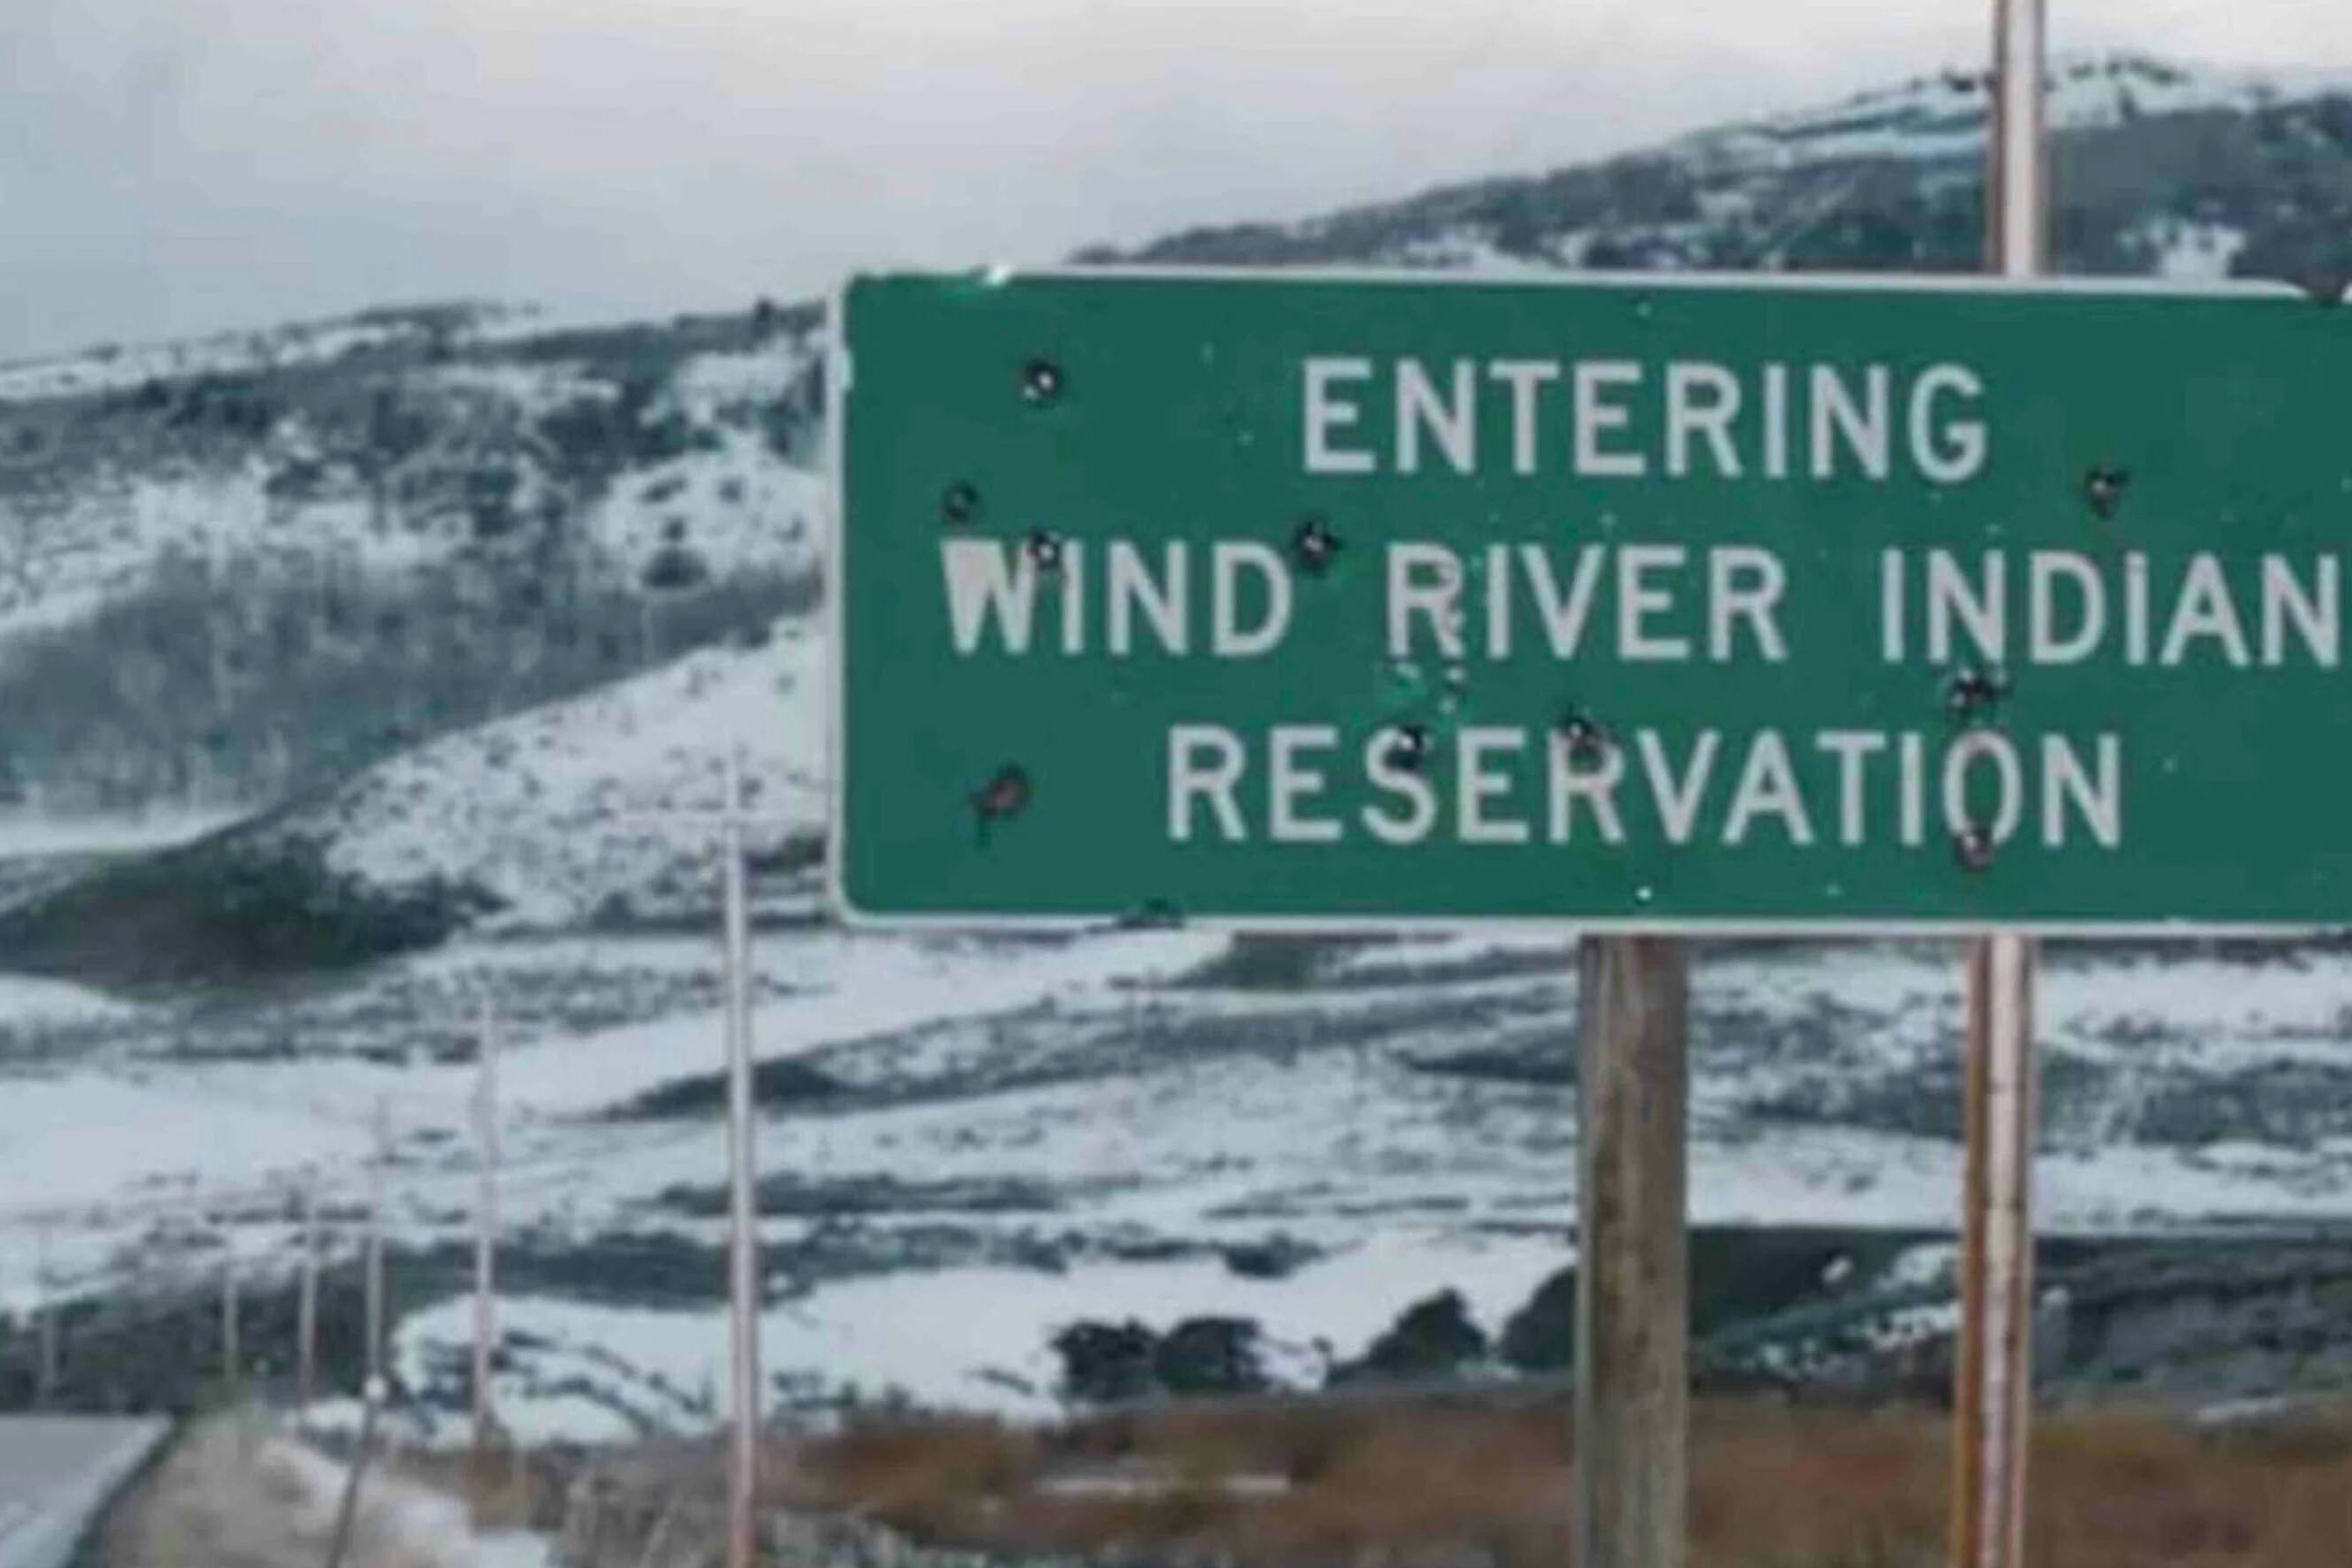 Wind river reservation sign 4 5 23